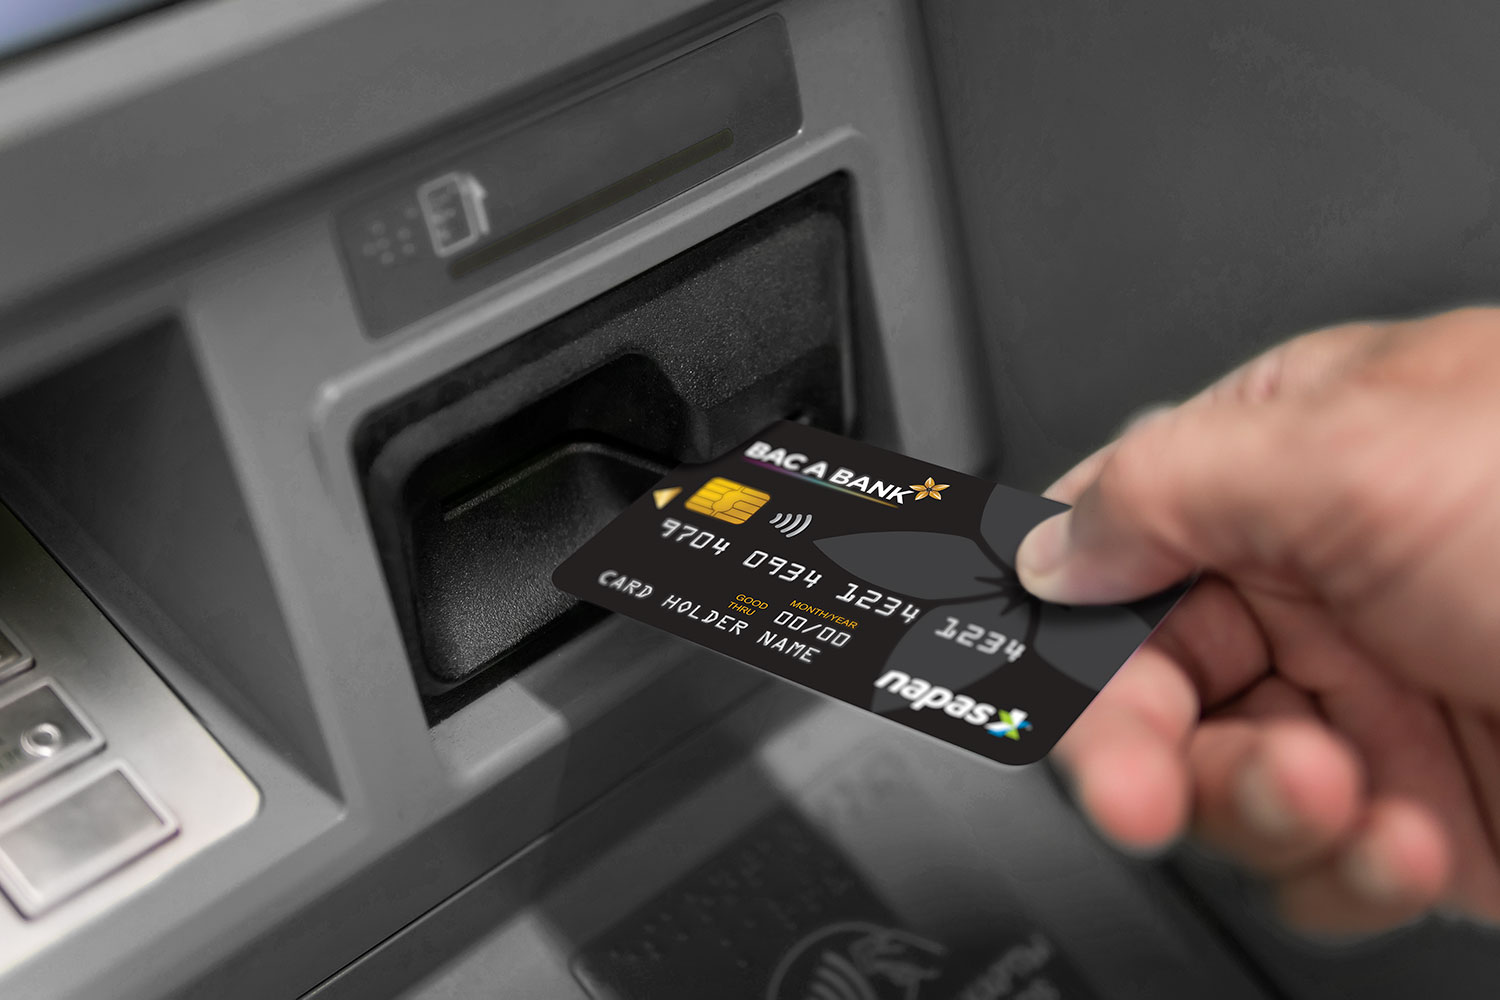 Thẻ ATM của ngân hàng Bắc Á có thể sử dụng để rút tiền ở các ngân hàng khác không? Đó là ngân hàng nào?